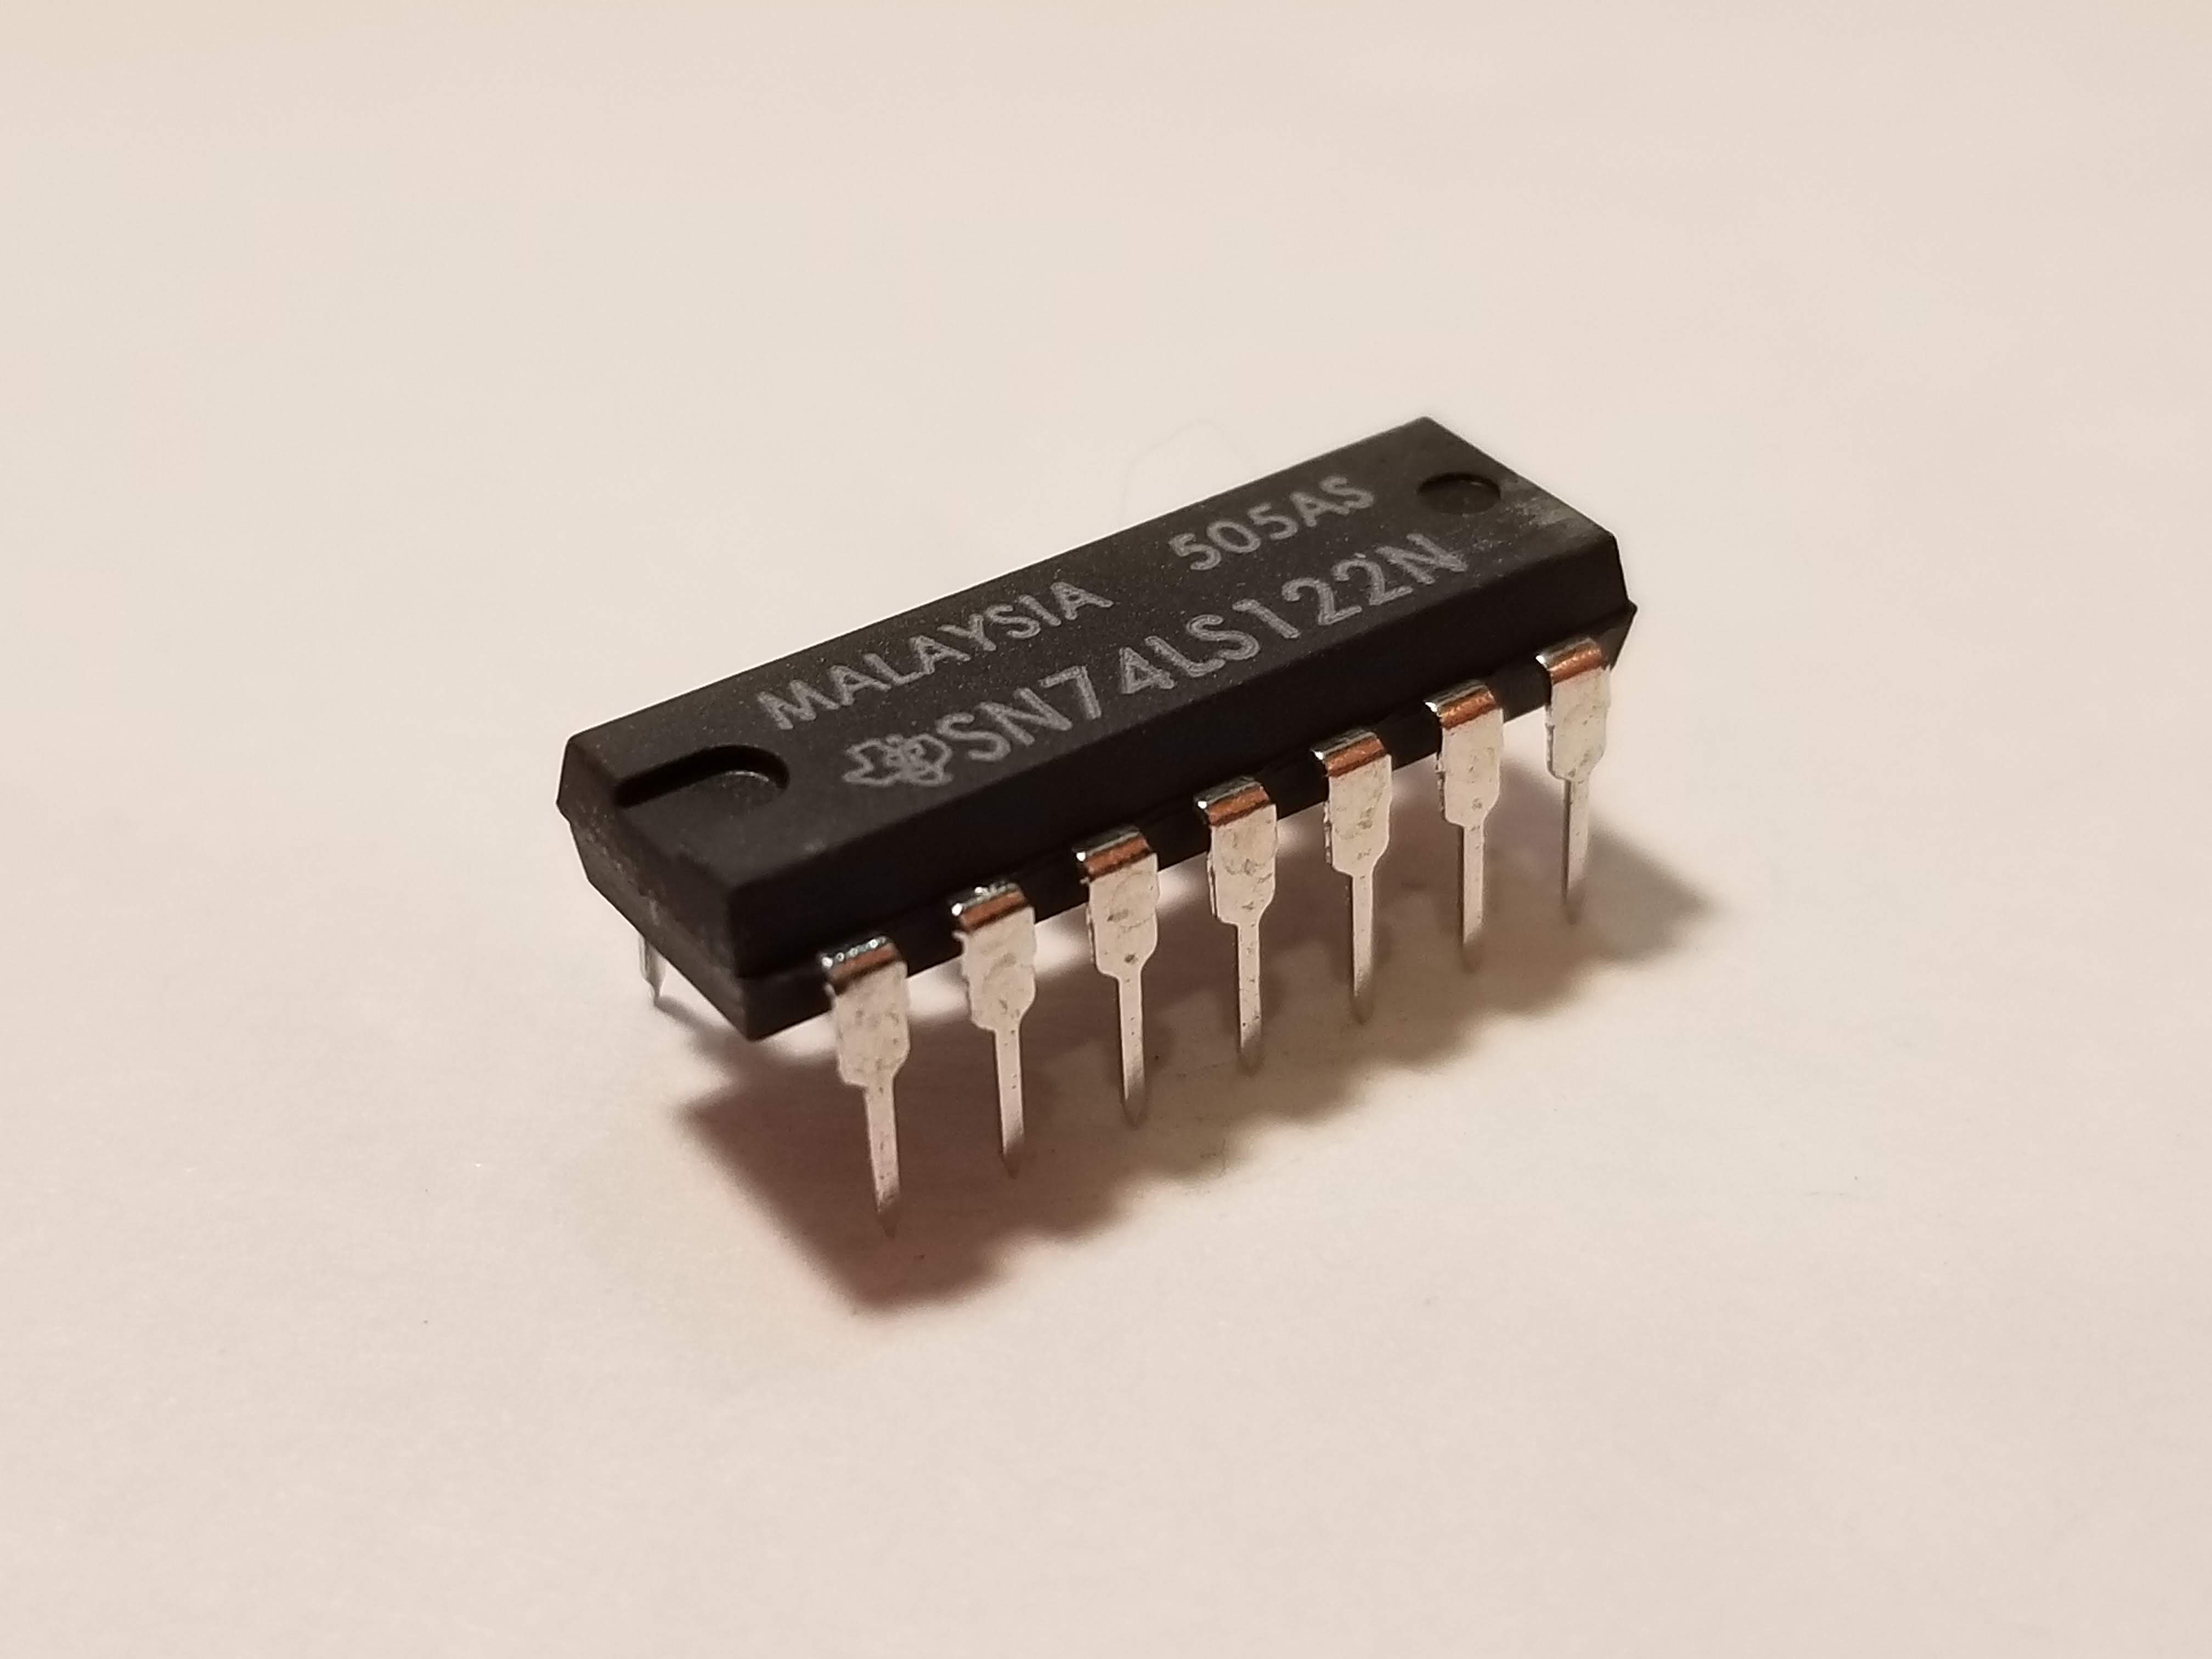 Picture of 74122 Retriggerable Monostable Multivibrator